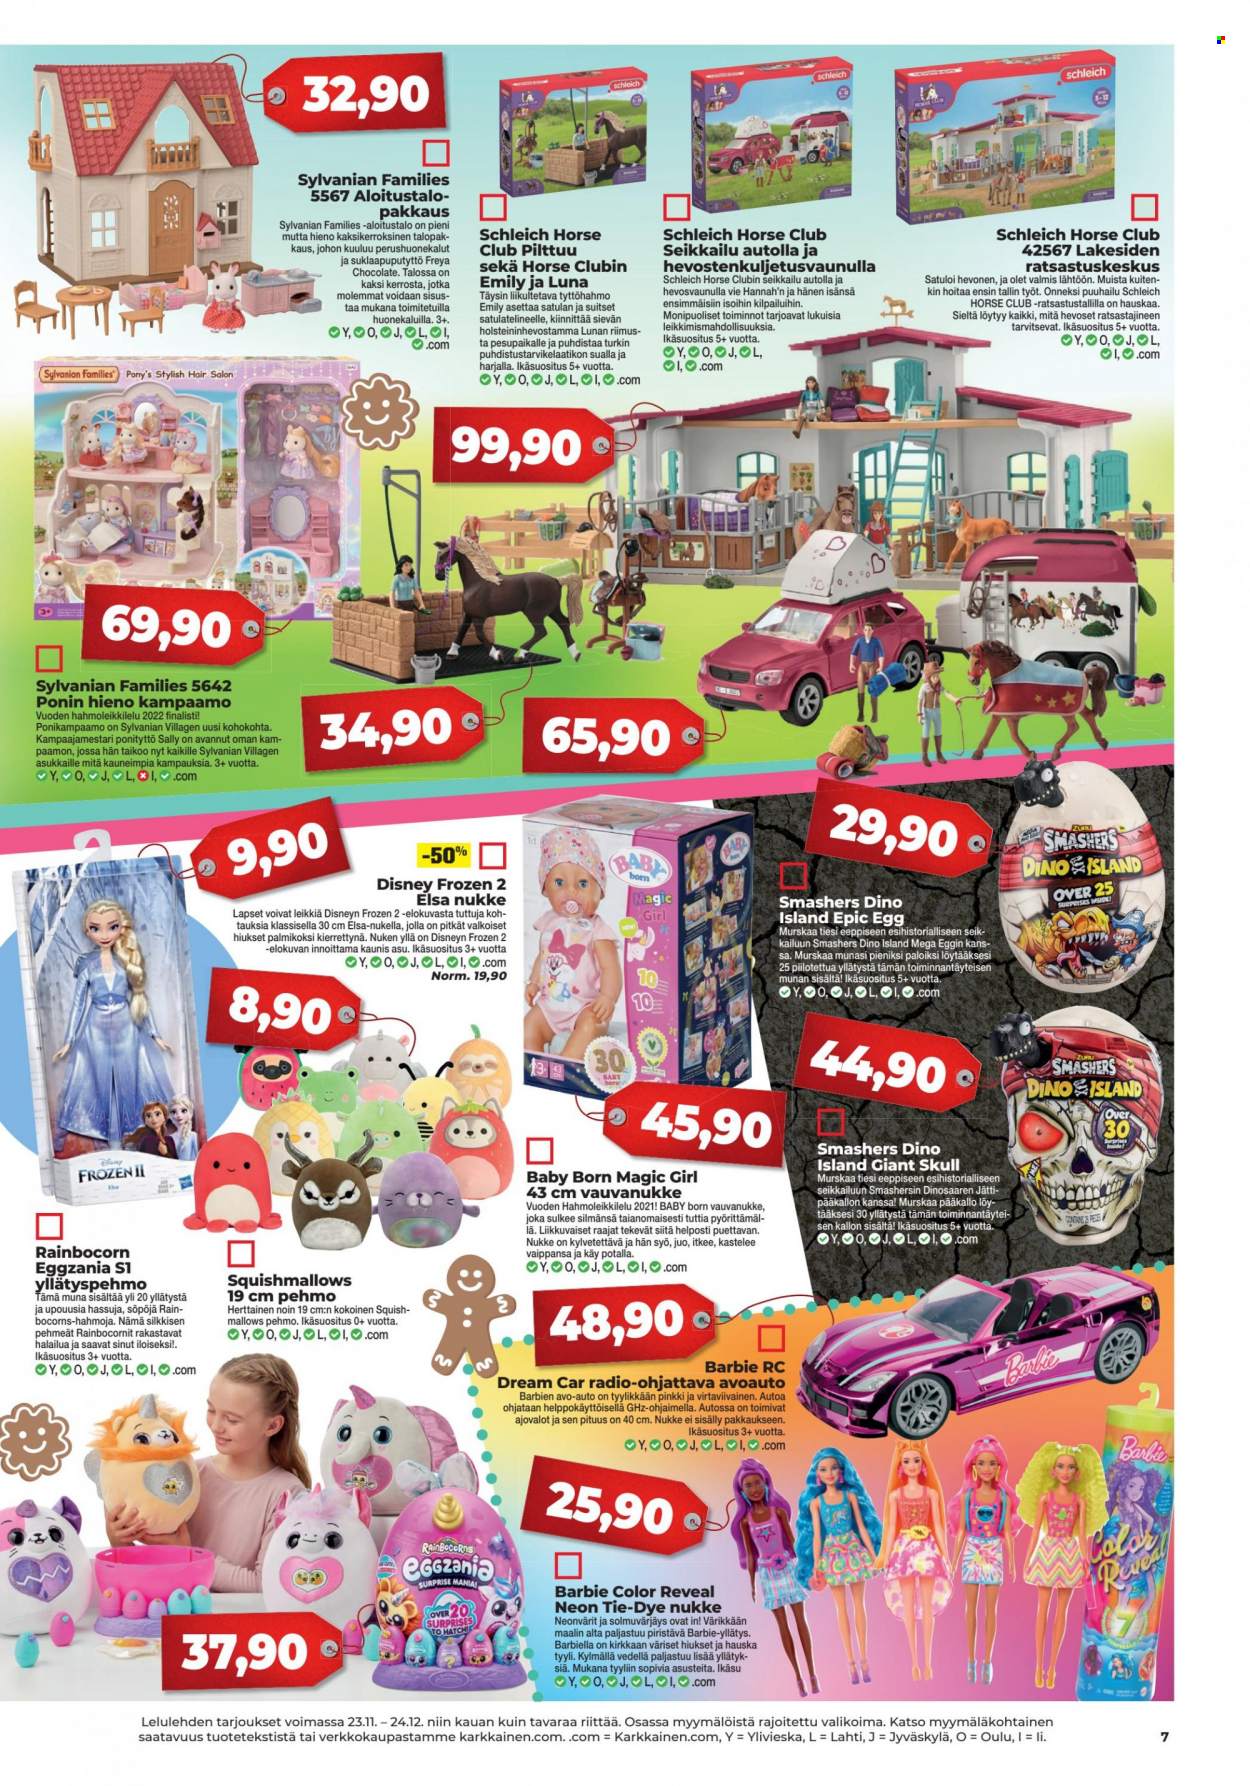 thumbnail - Kärkkäinen tarjoukset  - 23.11.2022 - 24.12.2022 - Tarjoustuotteet - Barbie, Disney, Baby Born, Disney Frozen, nukke, pehmo, Schleich. Sivu 7.